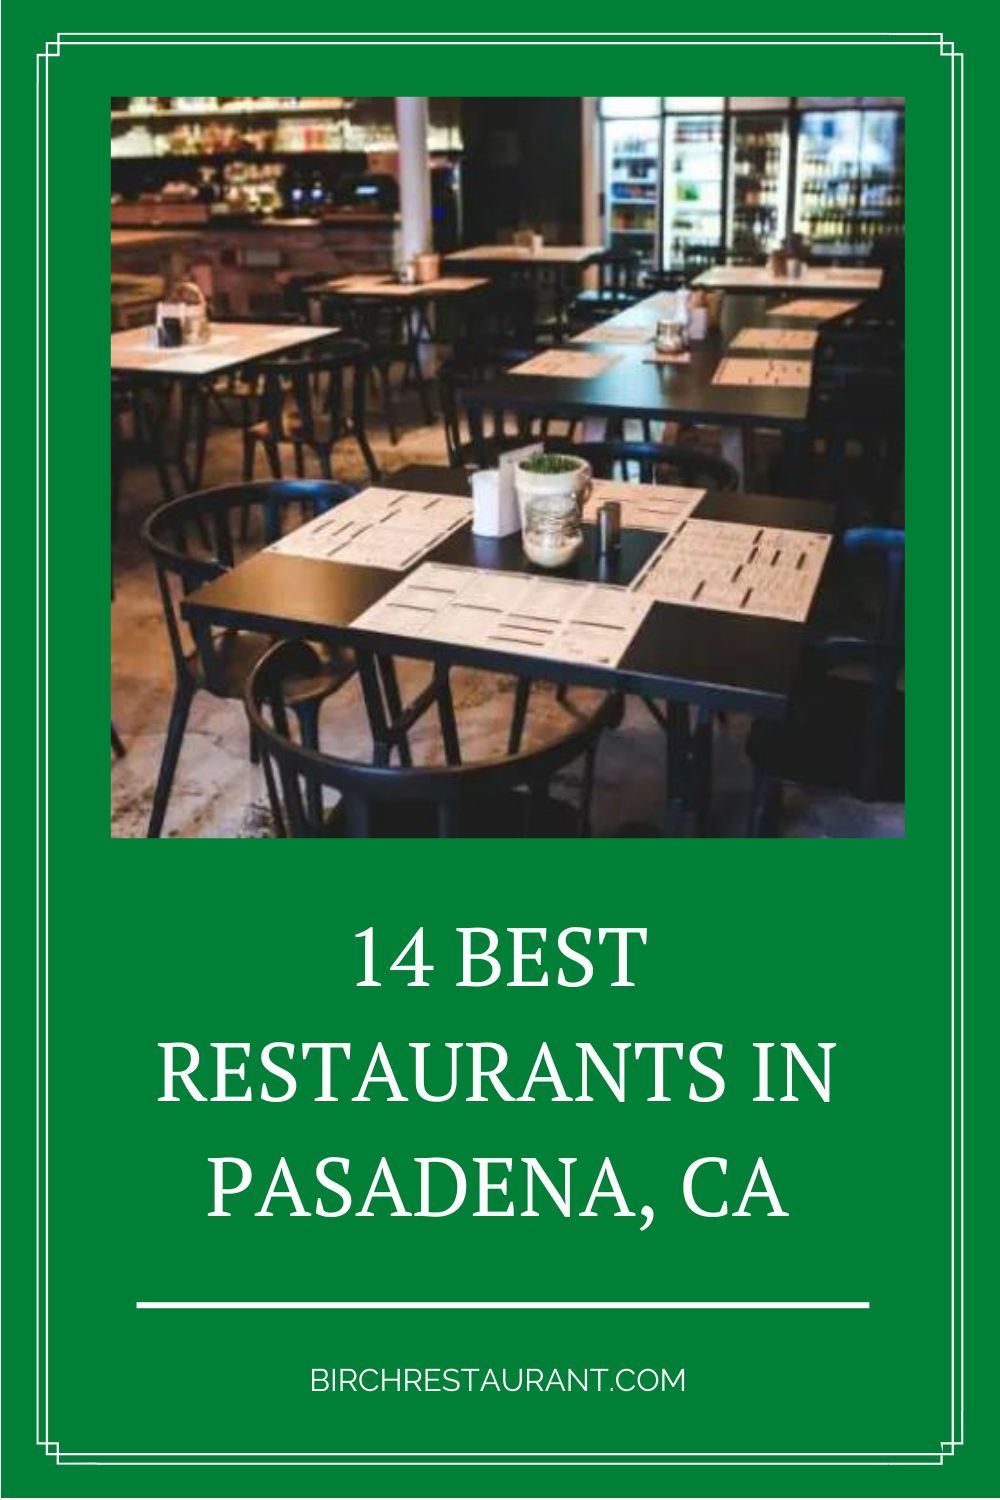 Best Restaurants in Pasadena